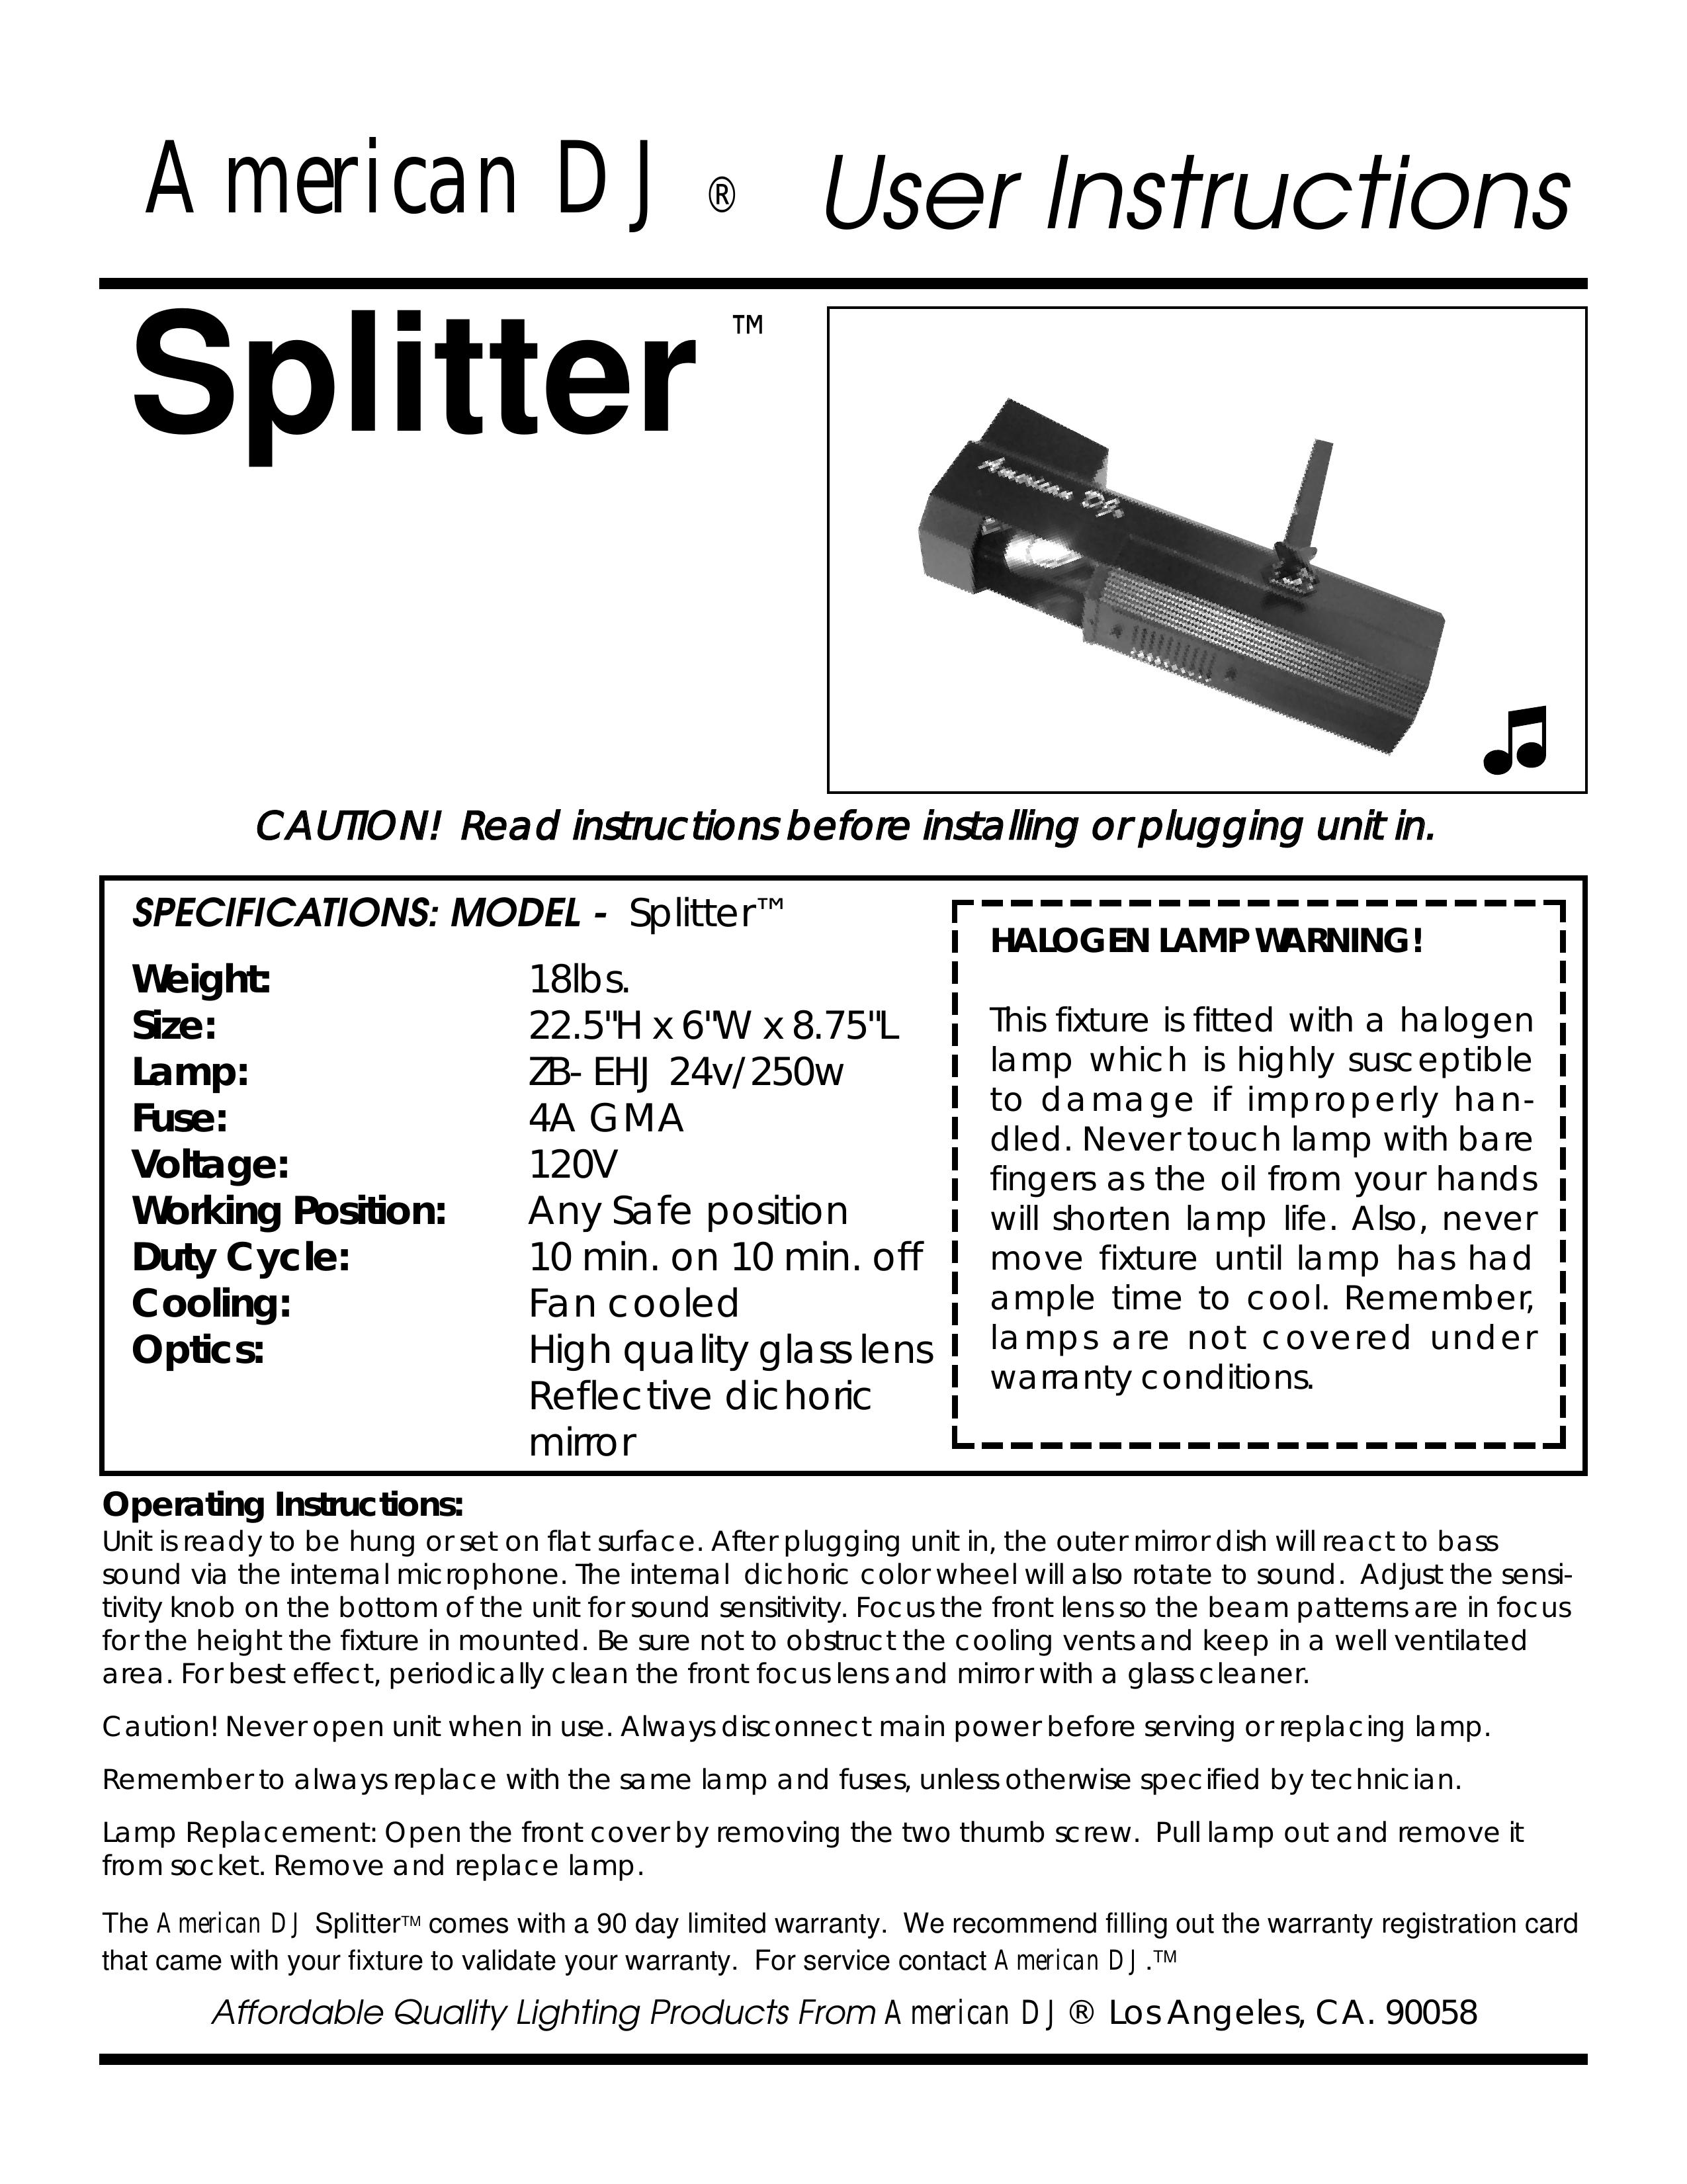 American DJ Splitter Log Splitter User Manual